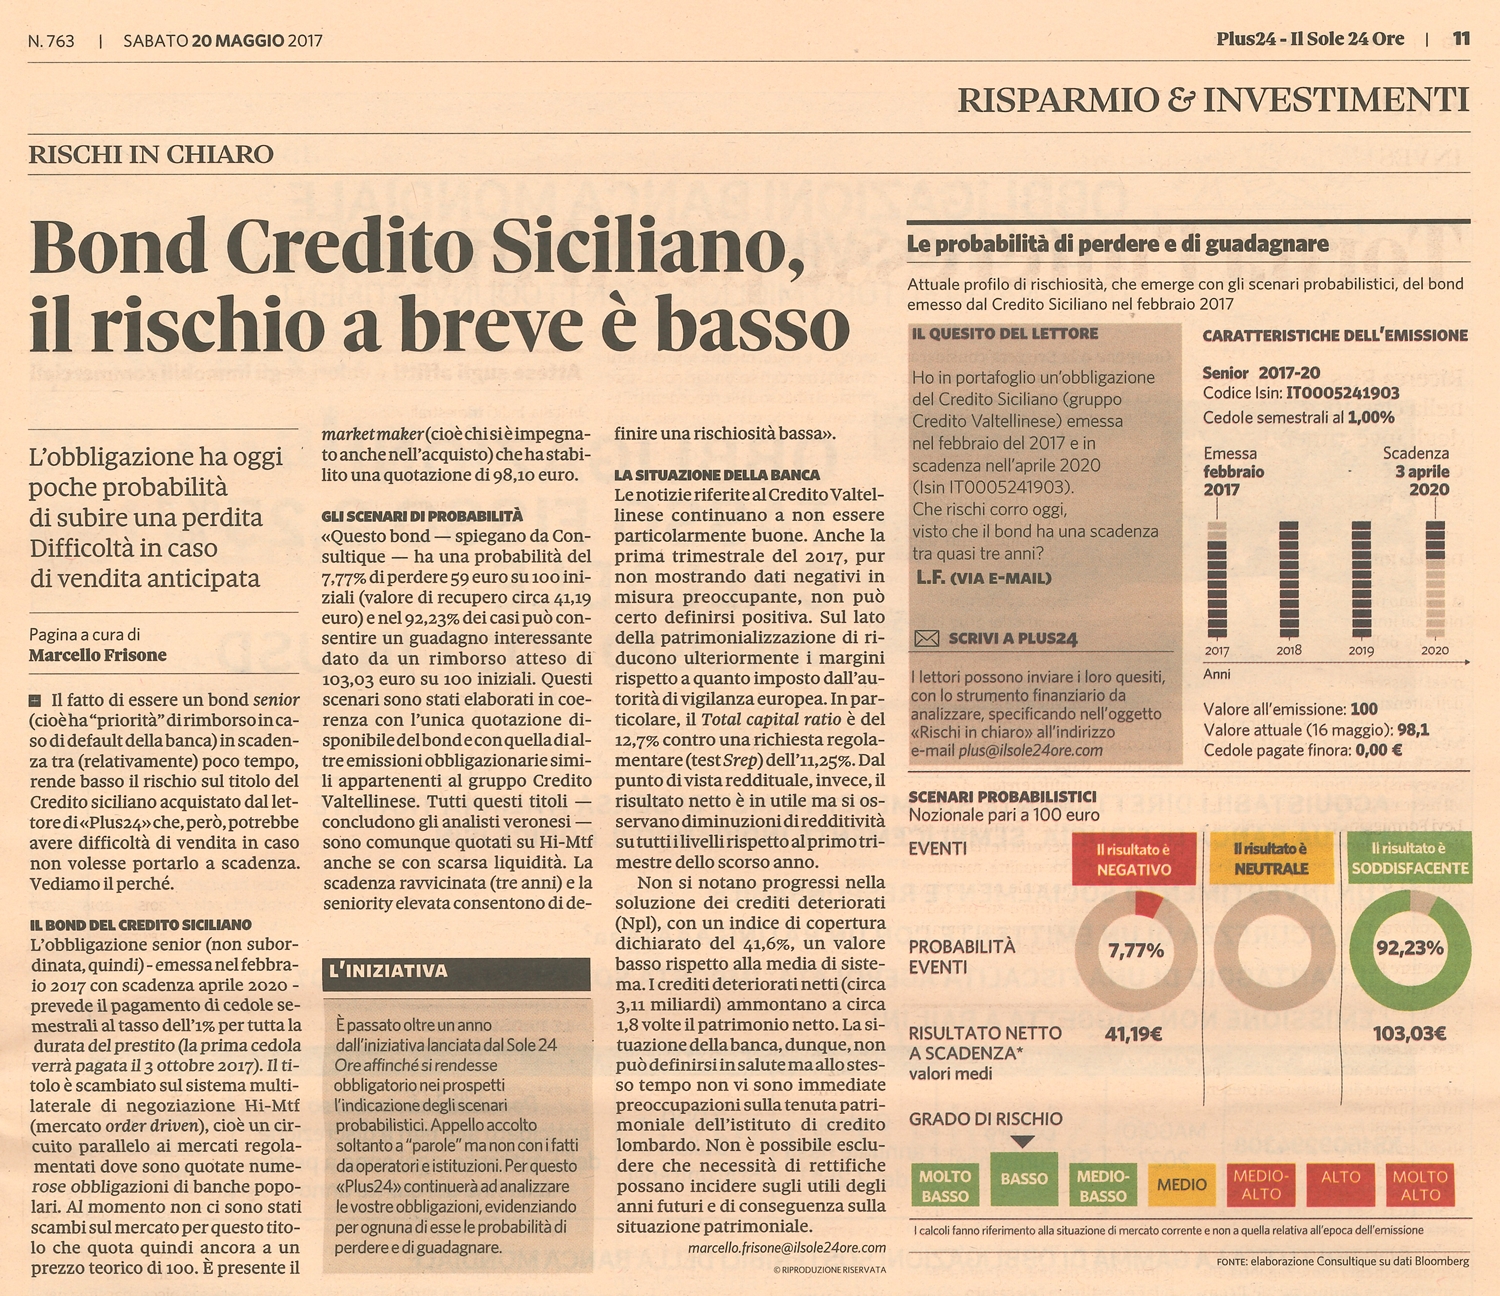 Bond Credito Siciliano, il rischio a breve è basso